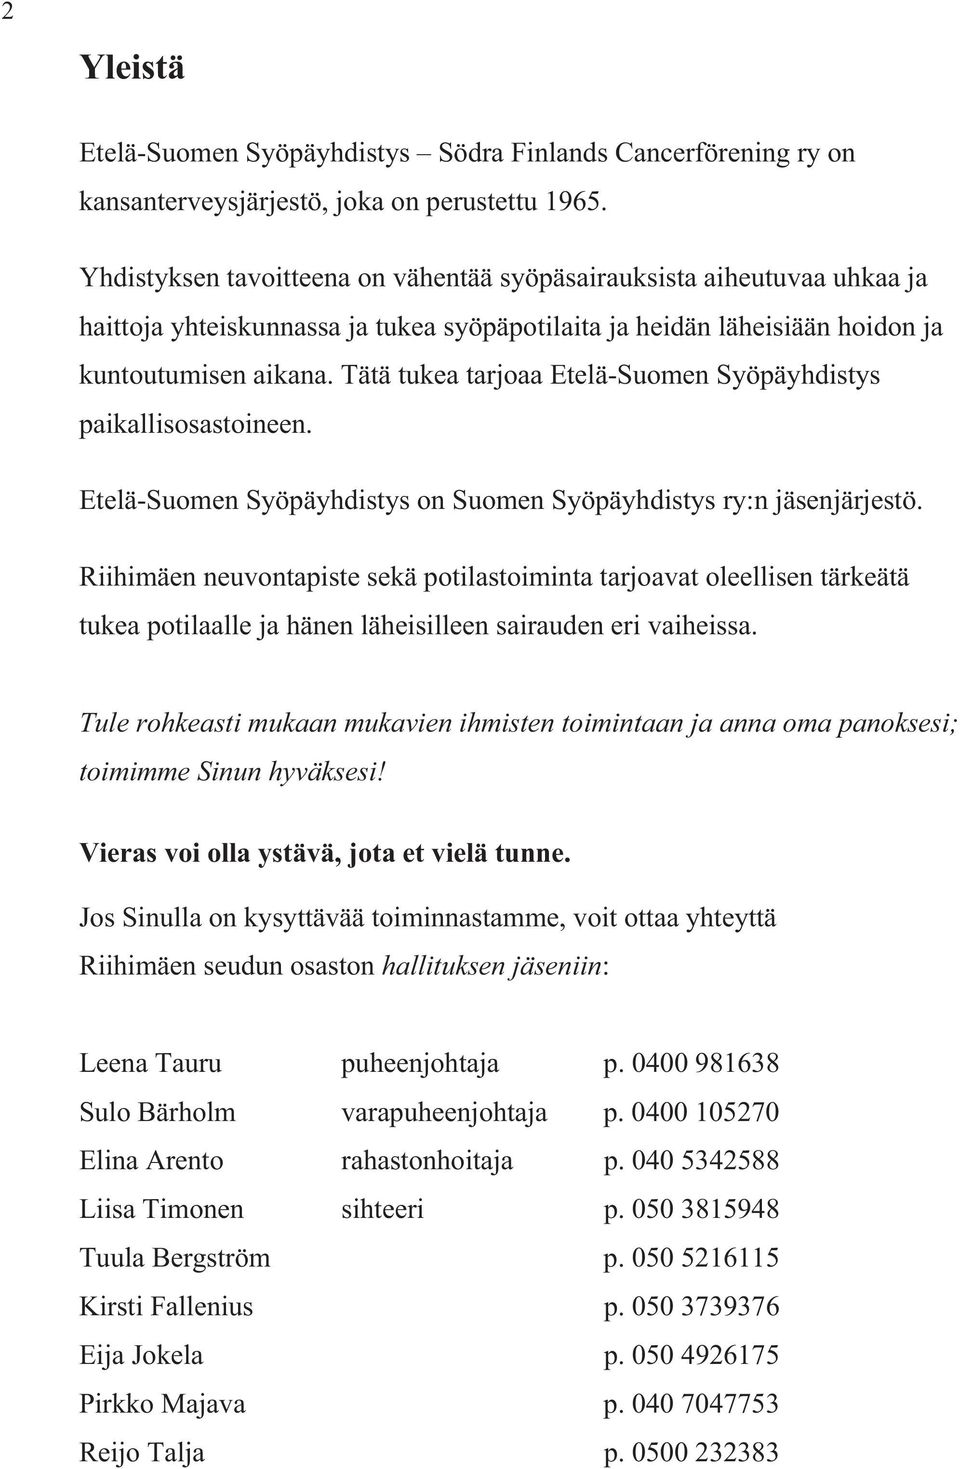 Tätä tukea tarjoaa Etelä-Suomen Syöpäyhdistys paikallisosastoineen. Etelä-Suomen Syöpäyhdistys on Suomen Syöpäyhdistys ry:n jäsenjärjestö.